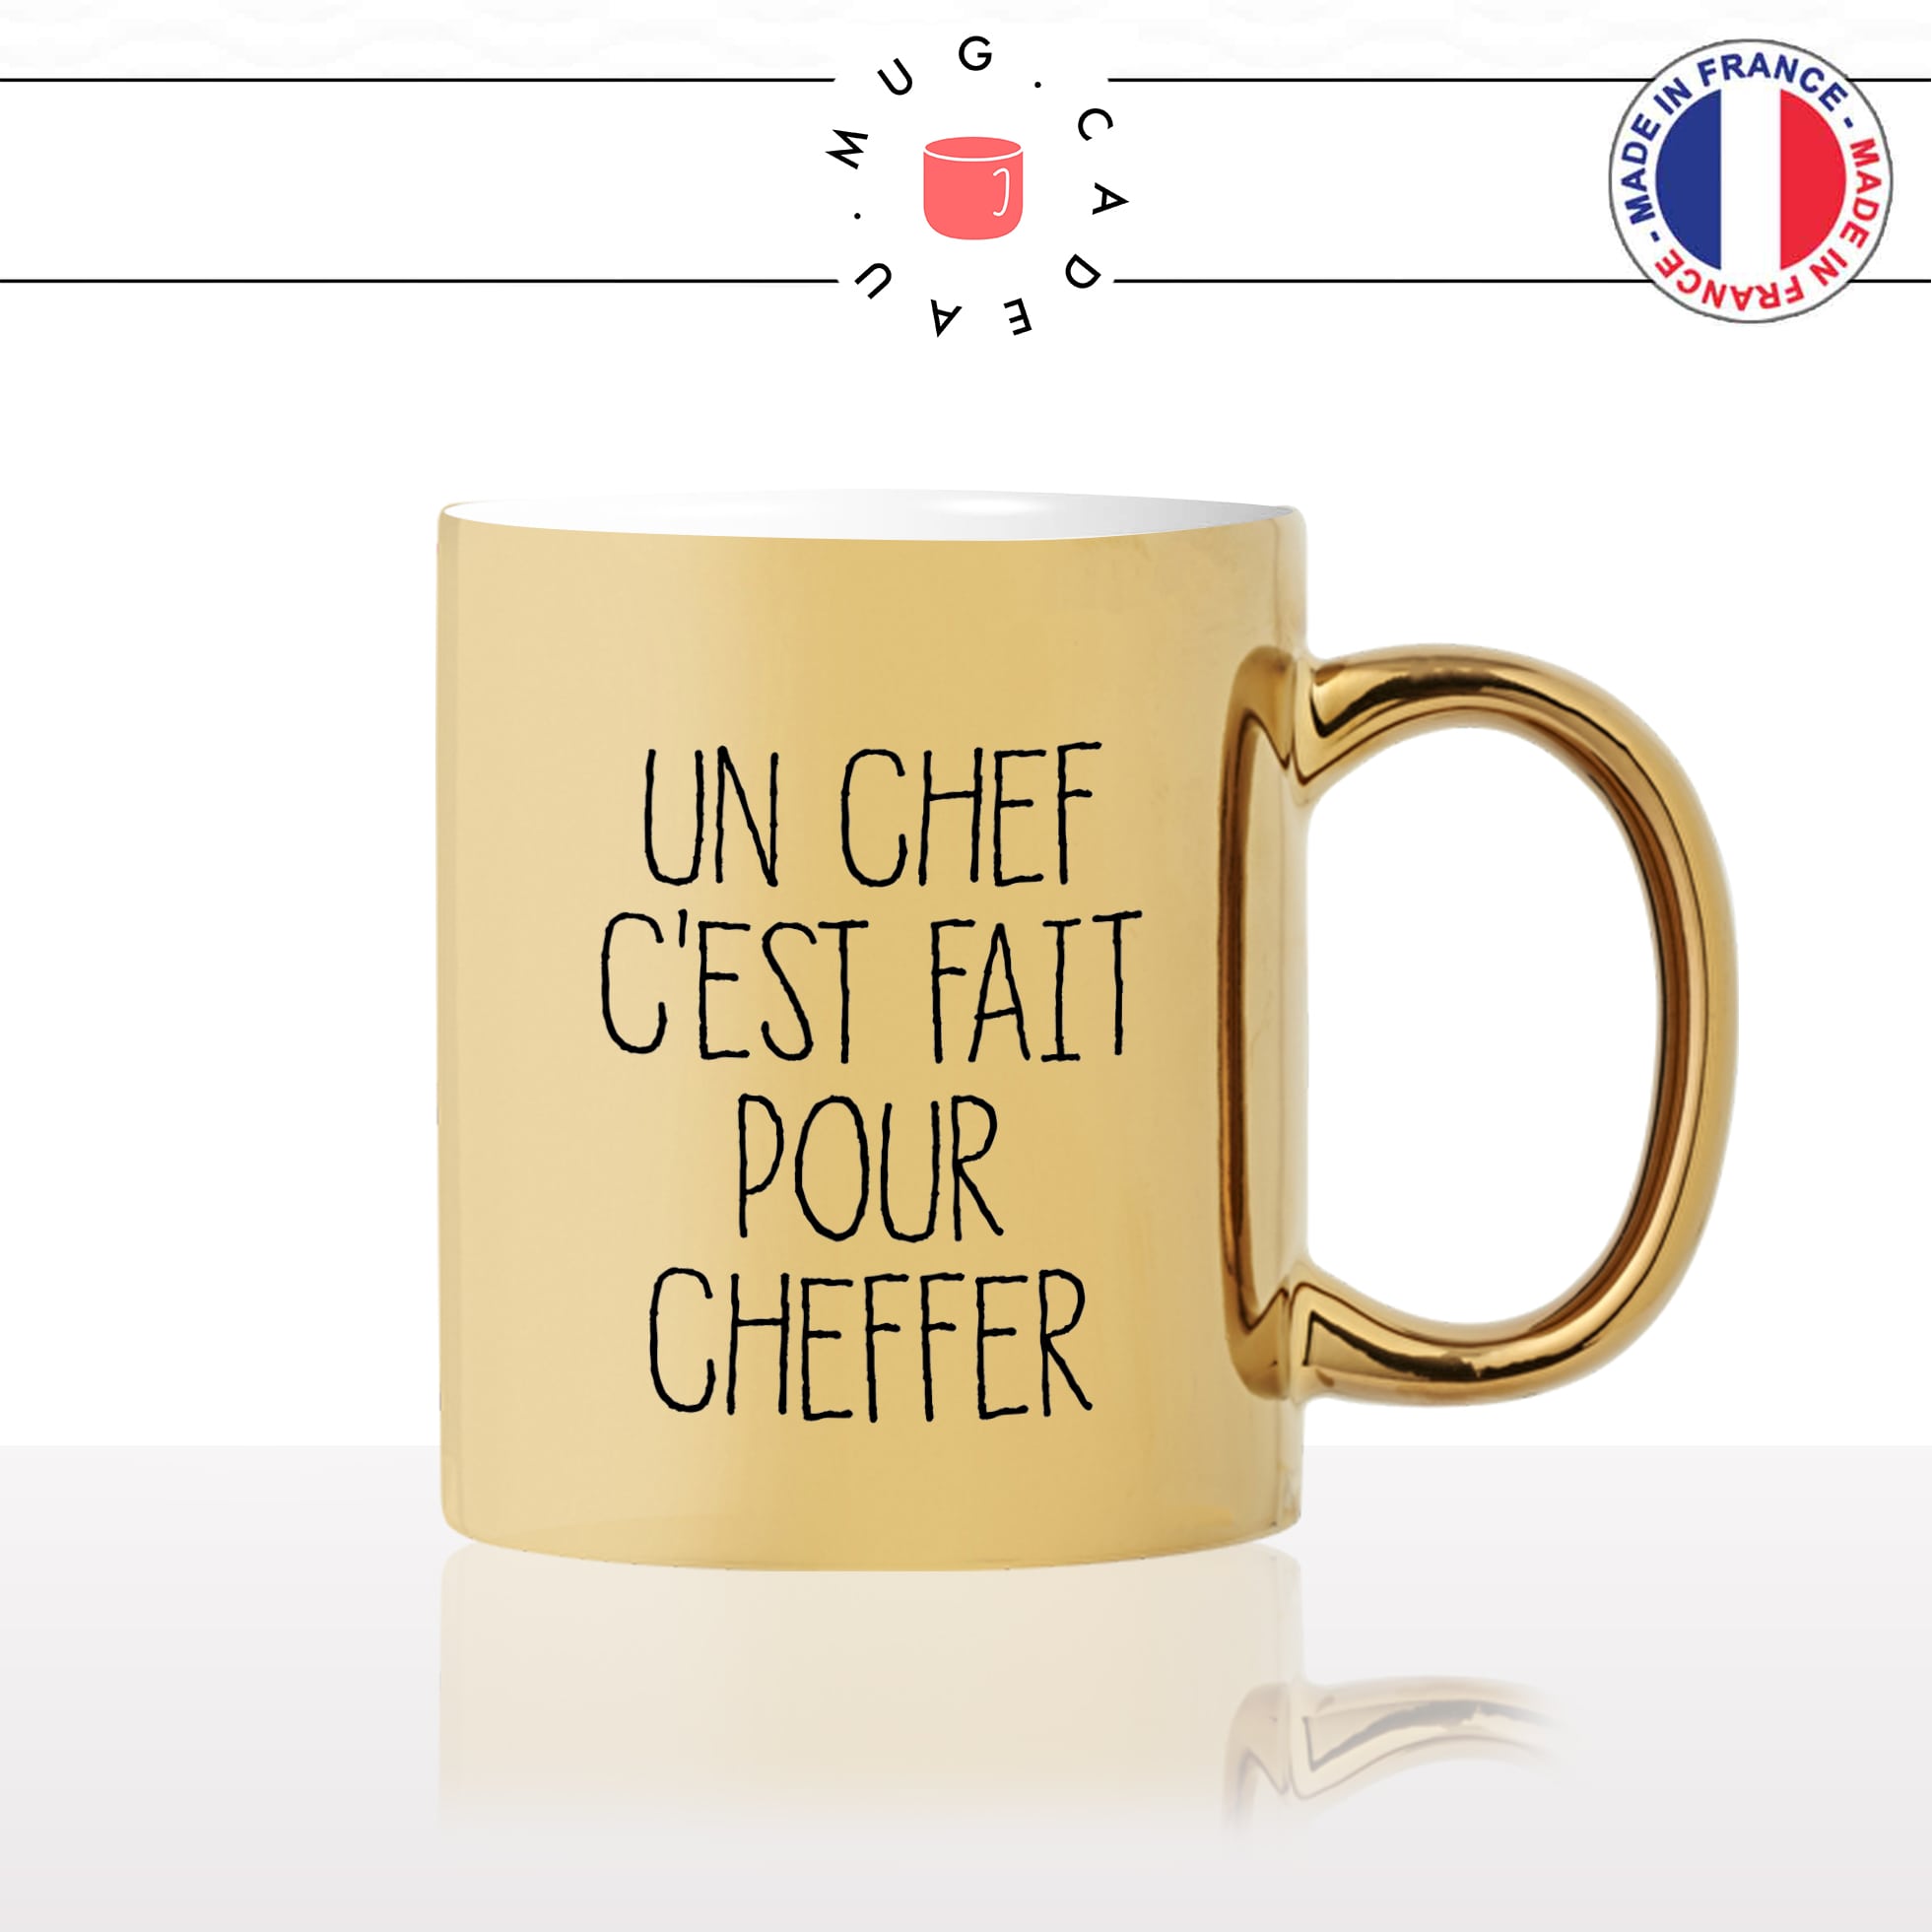 mug-tasse-doré-or-gold-un-chef-cest-fait-pour-cheffer-chirac-patron-citation-cool-humour-fun-idée-cadeau-personnalisé-café-thé2-min